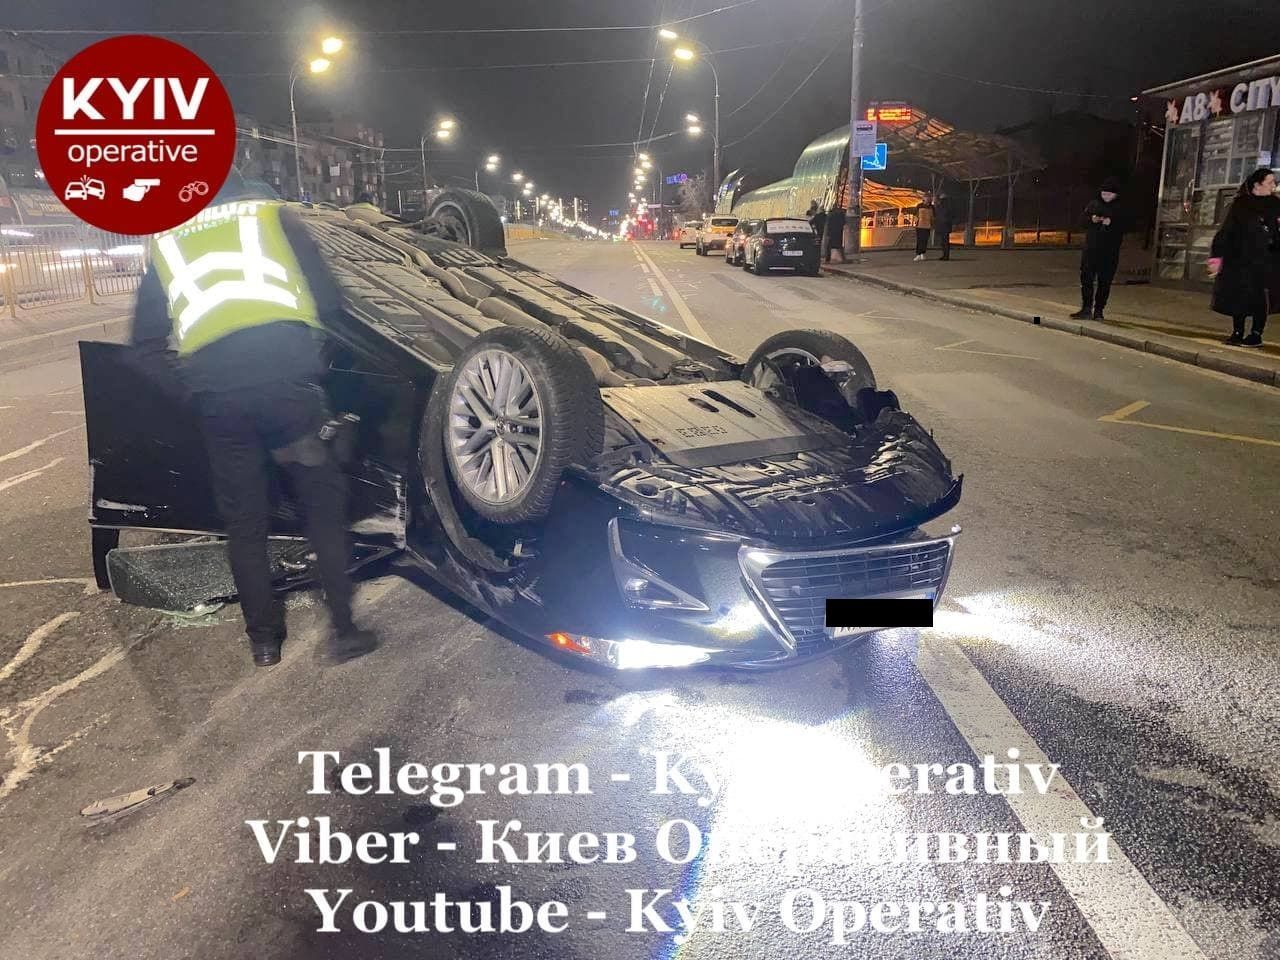 Втікав від бійки, а потрапив під авто: у Києві загинув юнак - Київ